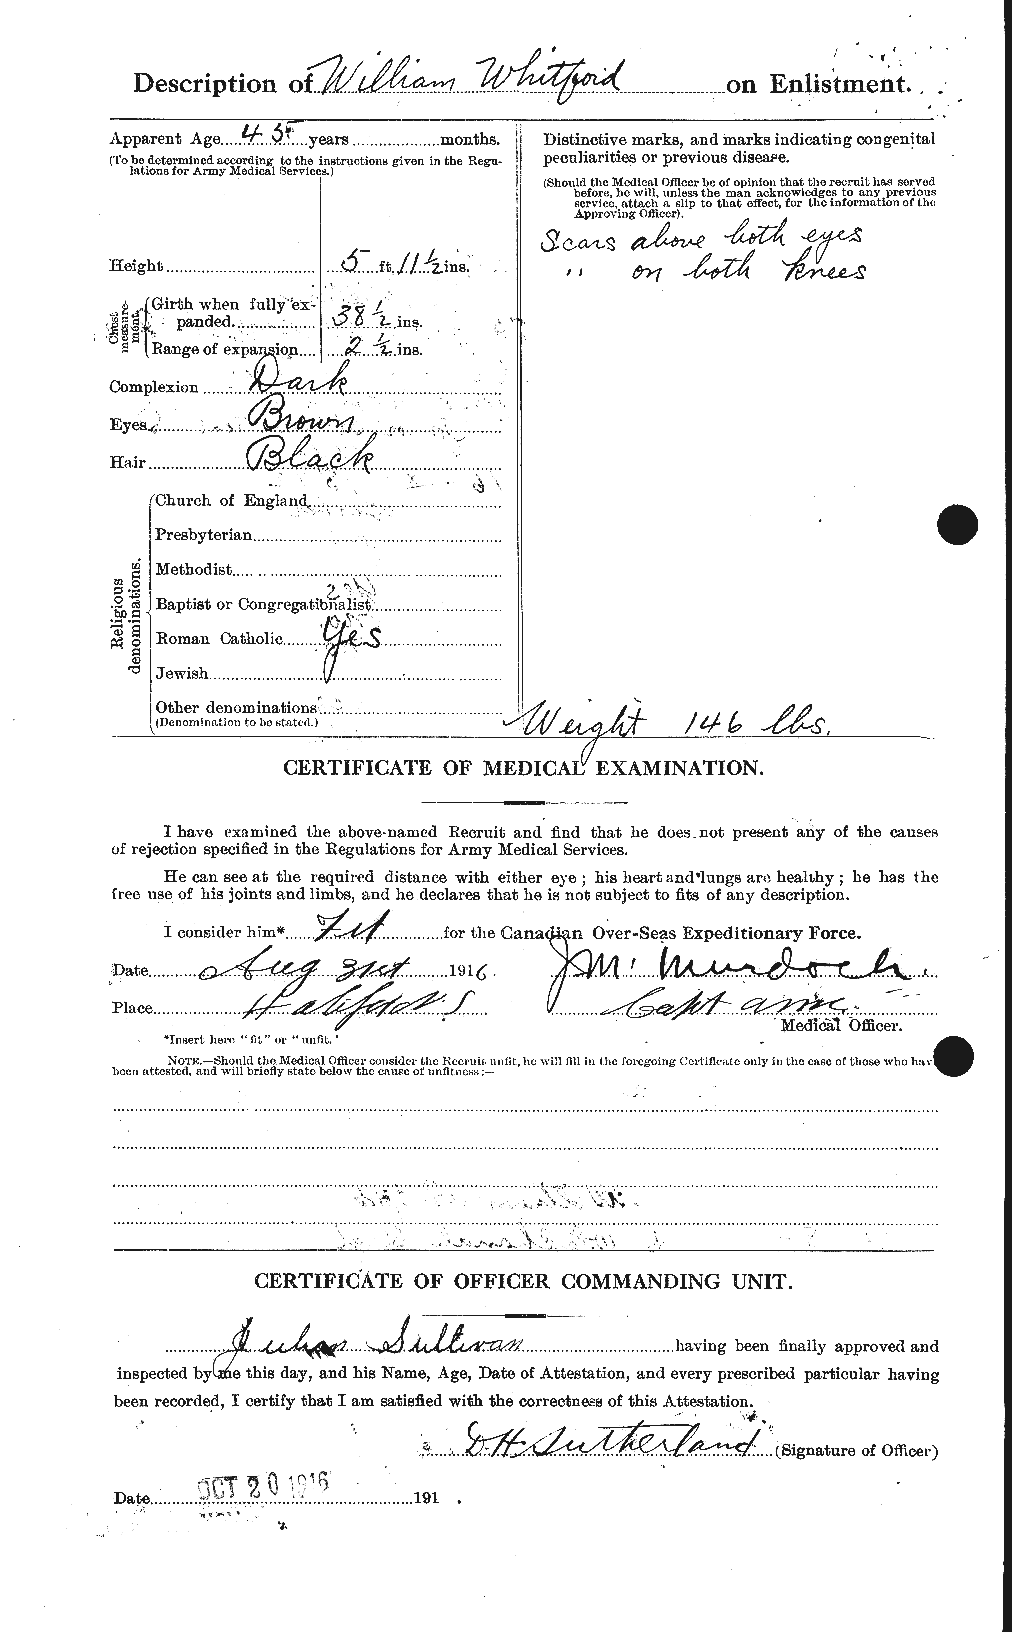 Dossiers du Personnel de la Première Guerre mondiale - CEC 670780b